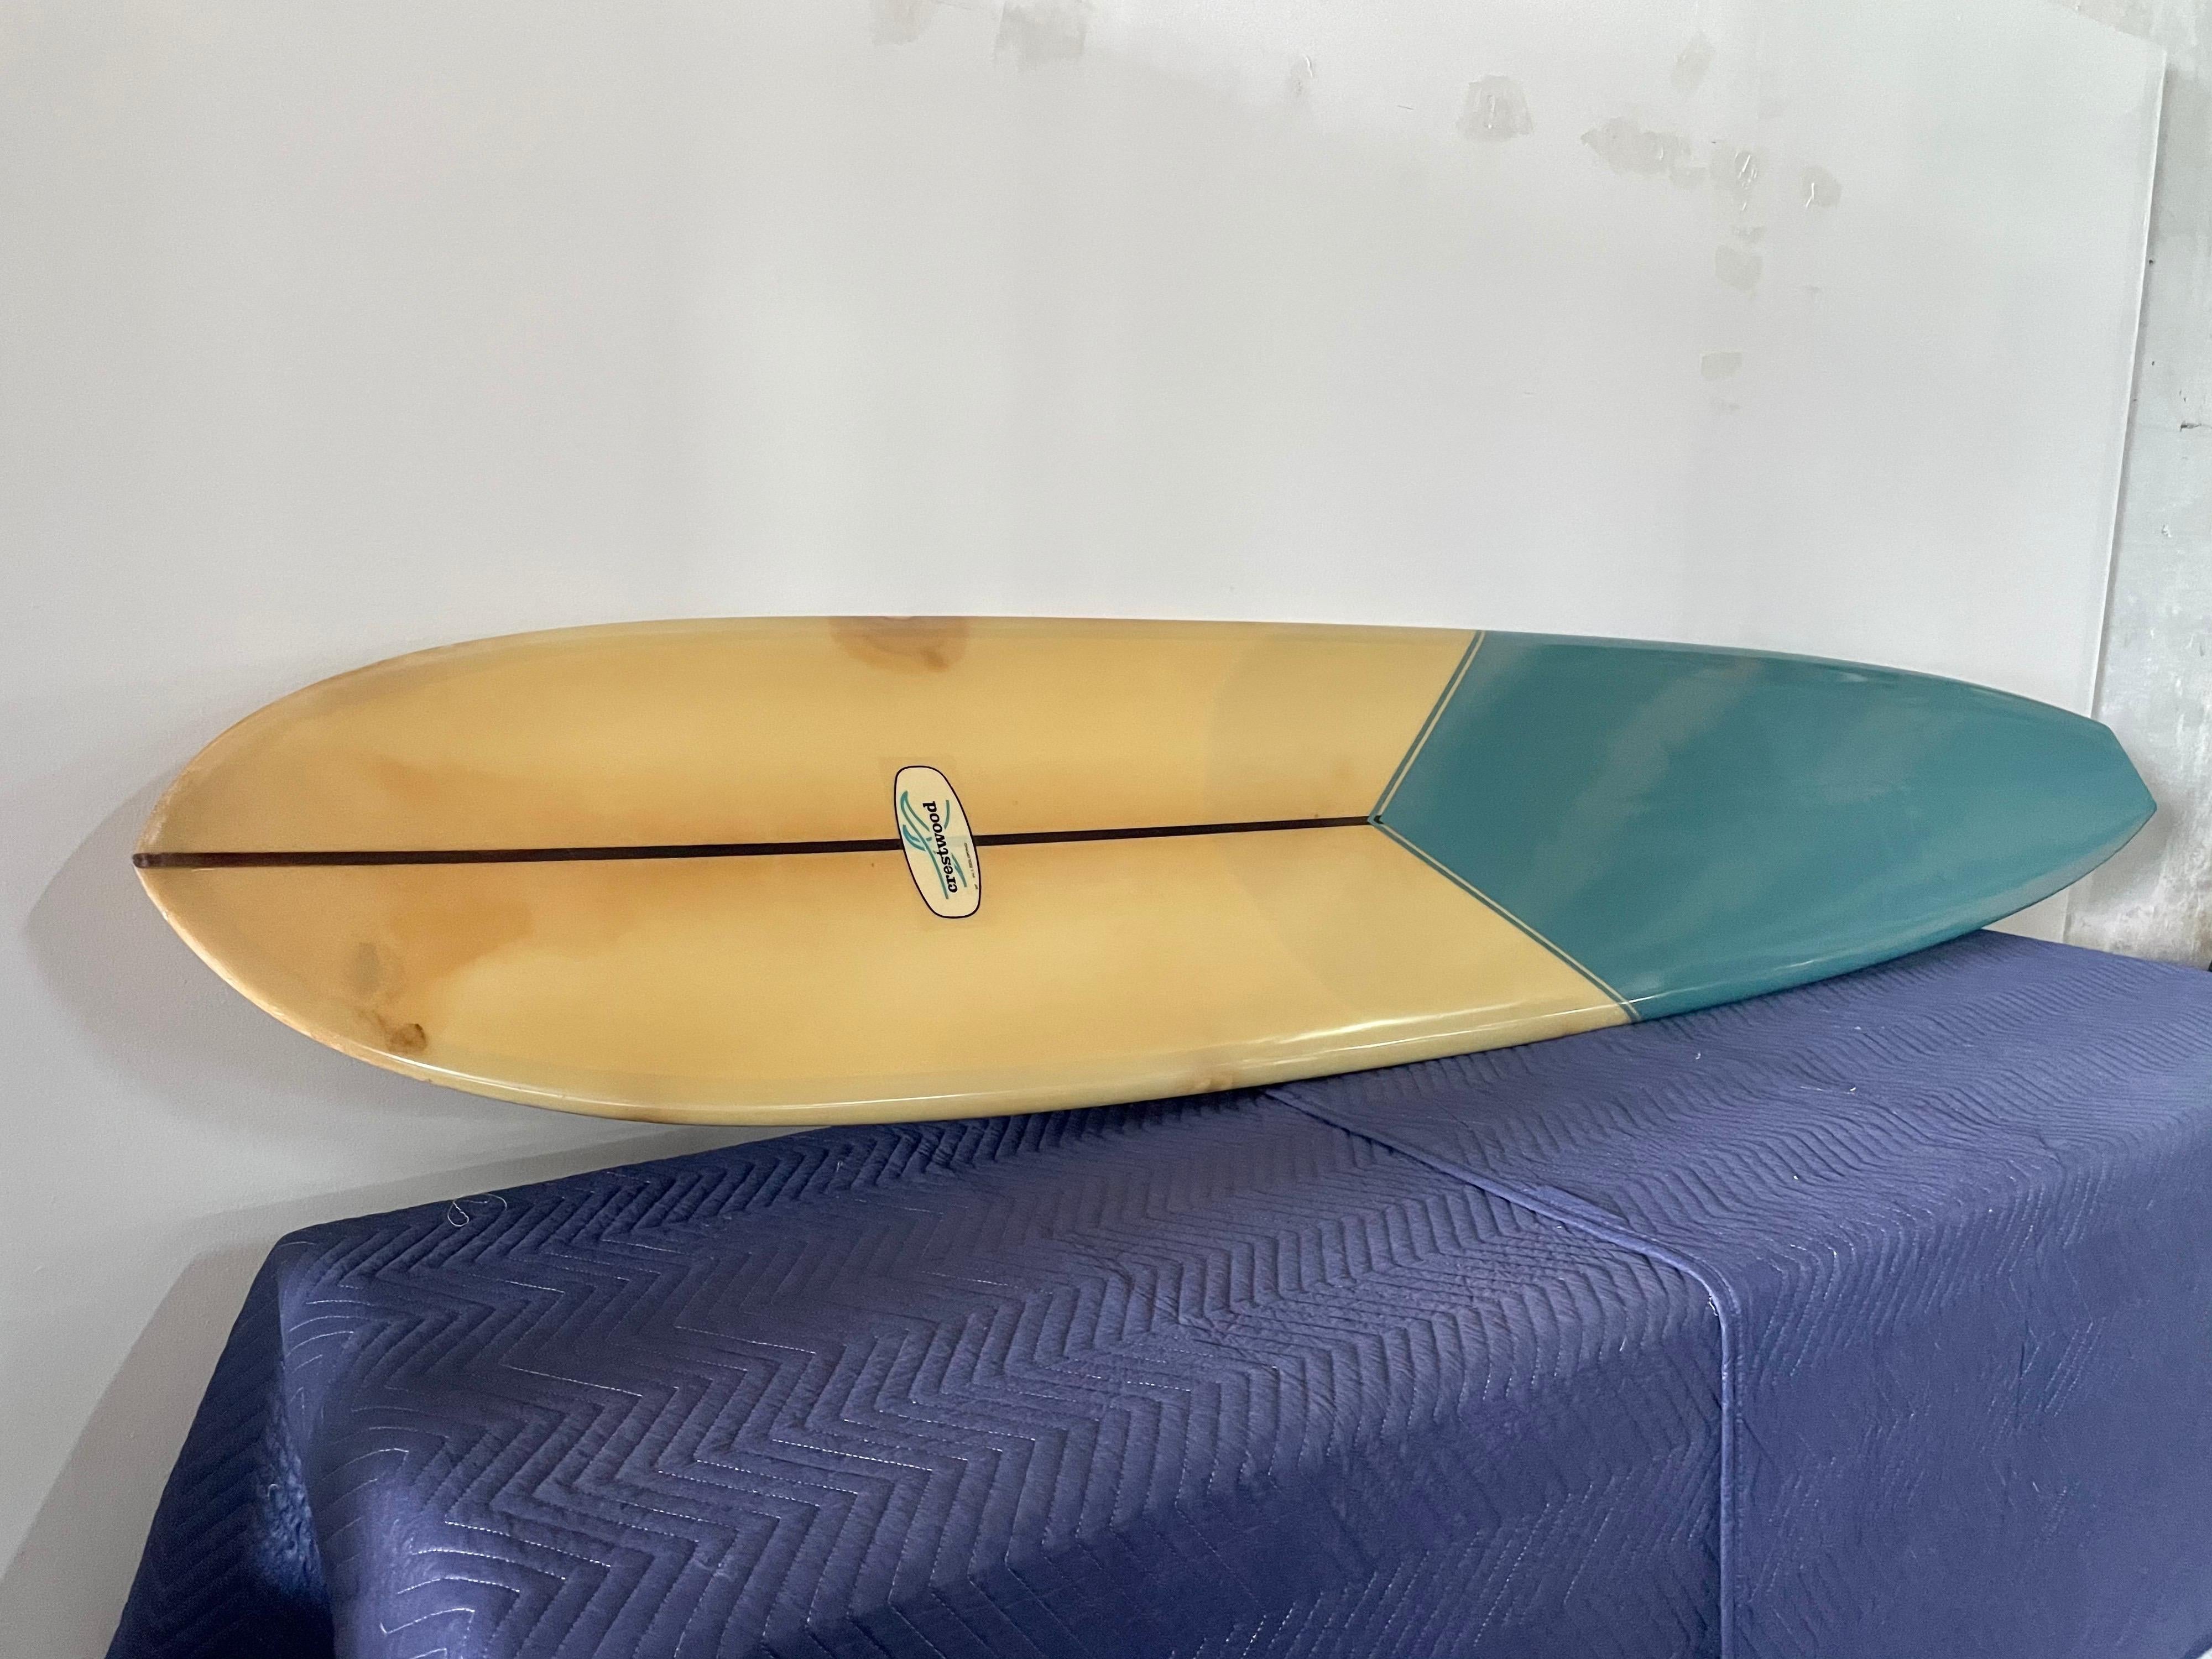 1966 Vintage Crestwood Longboard / Surfboard by Billy Sautner 3